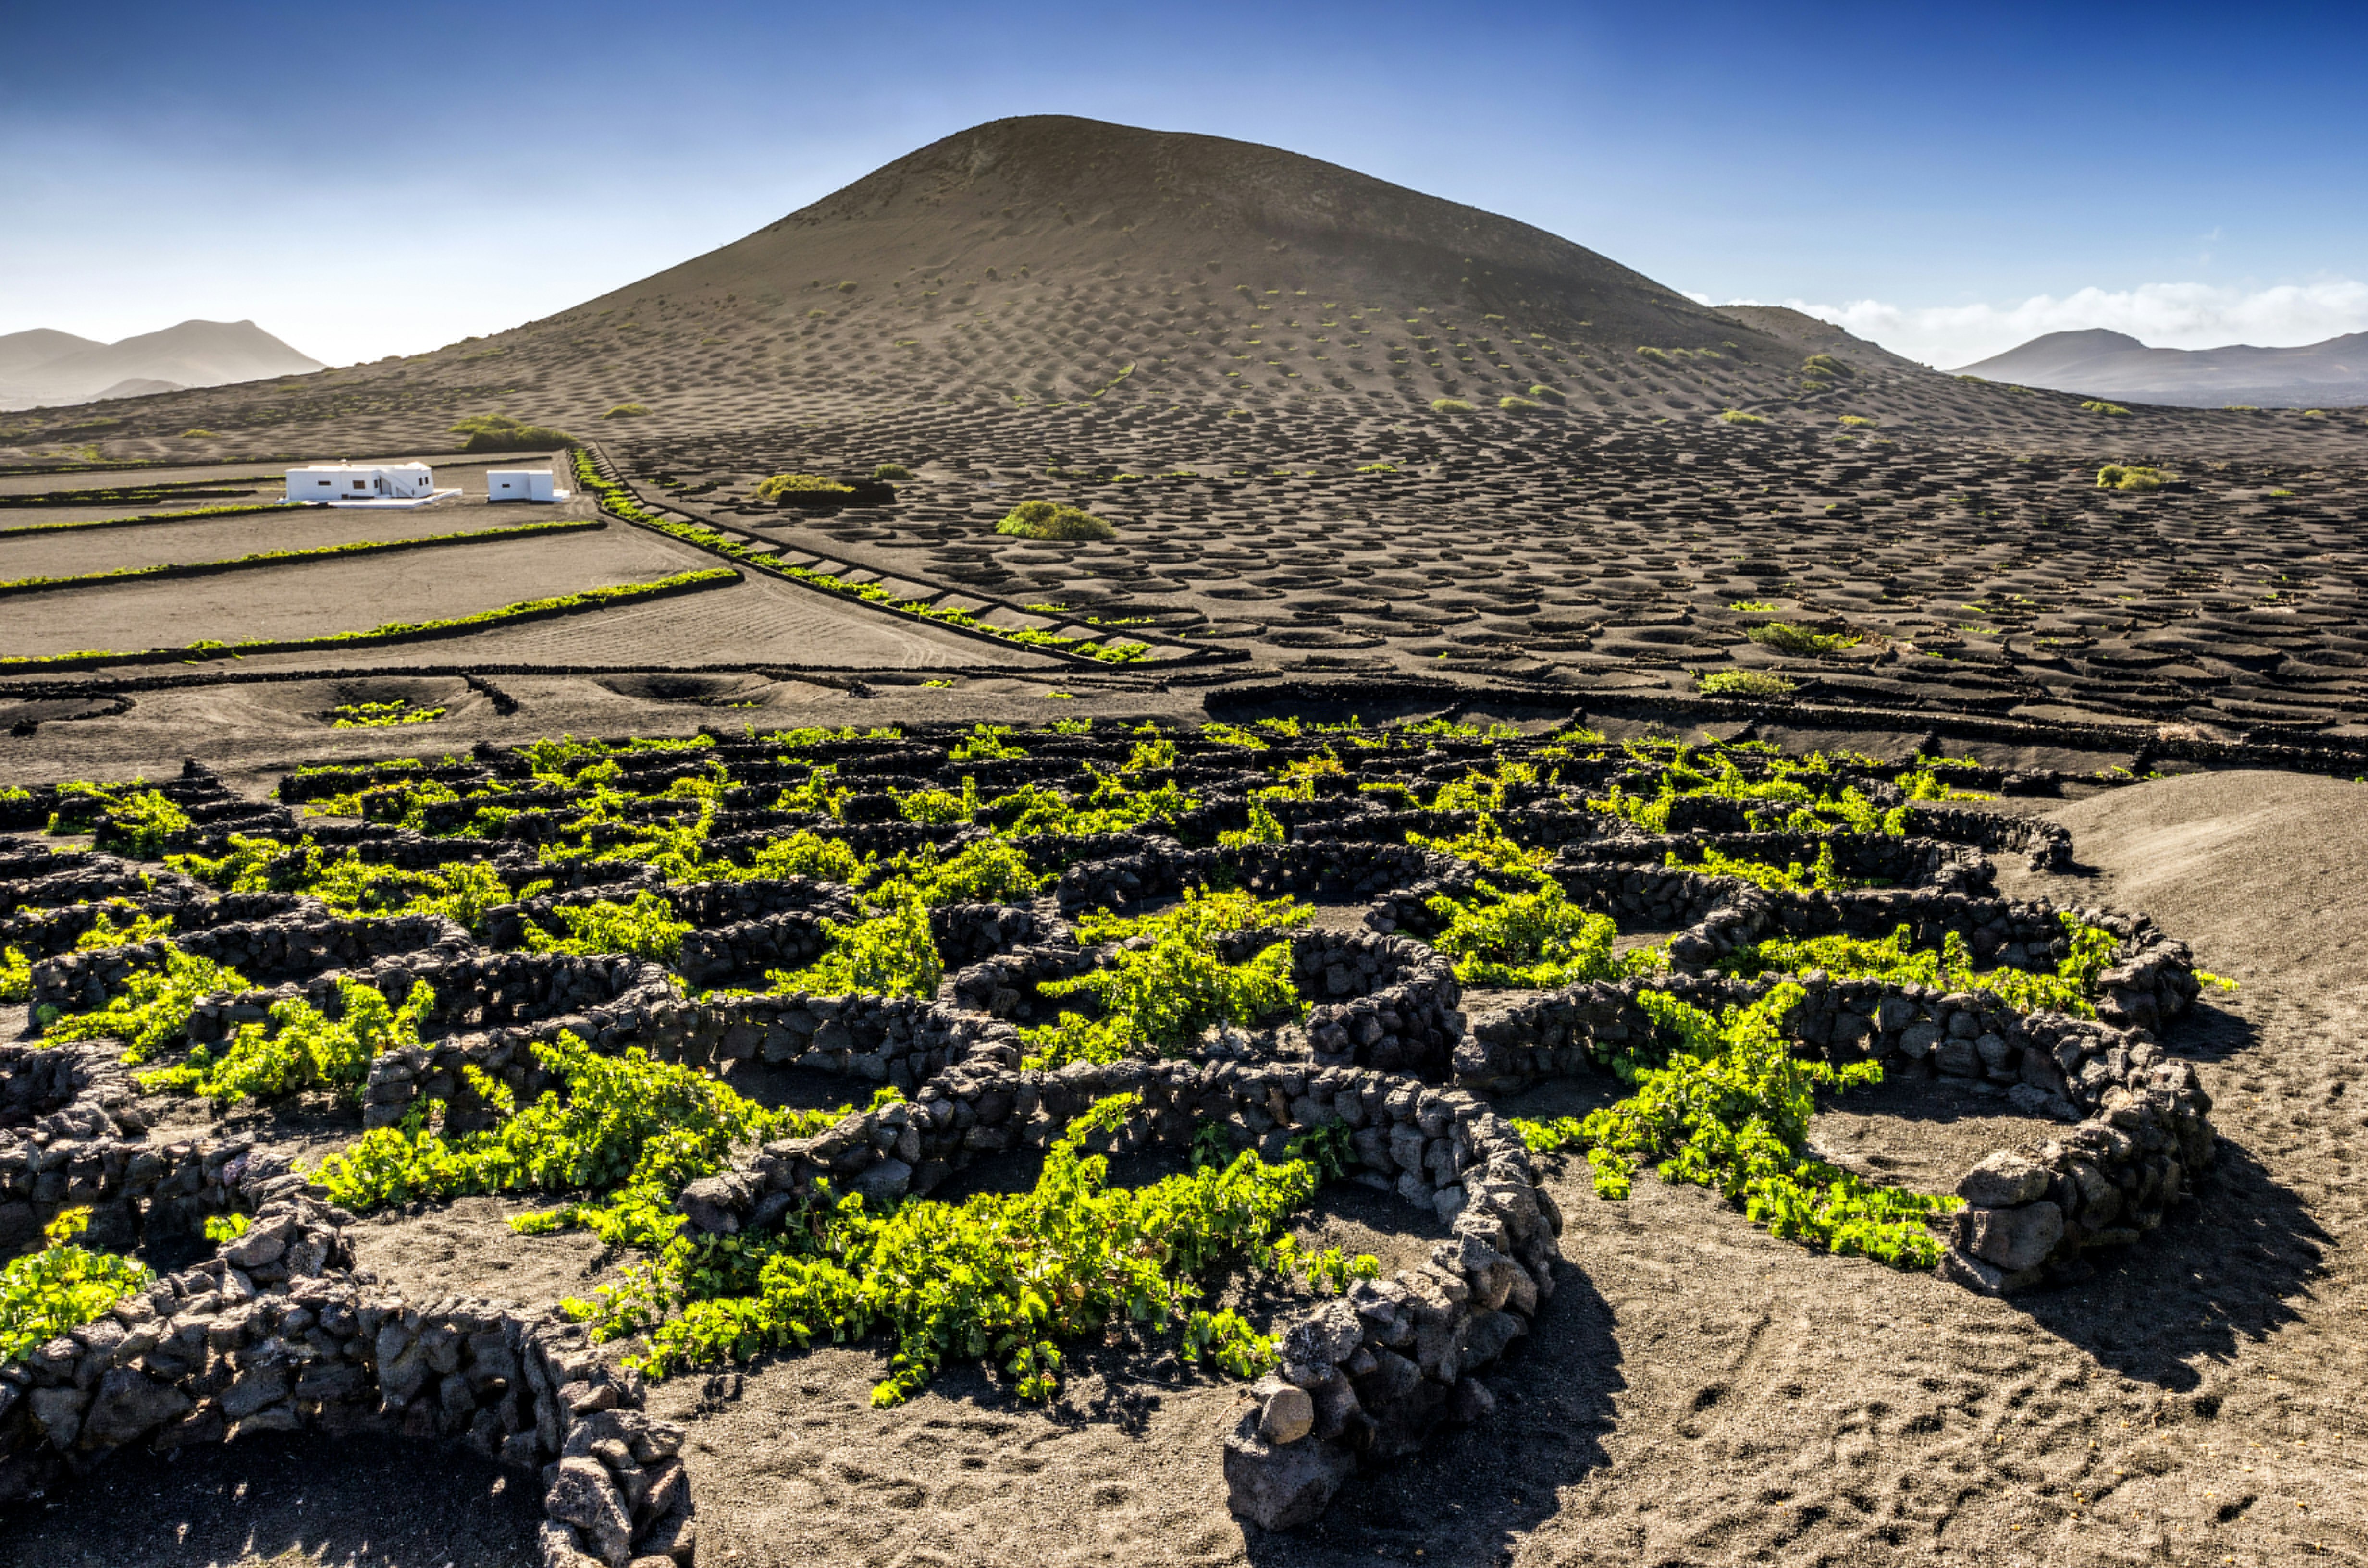 在火山景观中的葡萄园场景。低增长的鲜绿色藤蔓被半圆形的石墙遮蔽，而它们是黑色土壤的山丘。